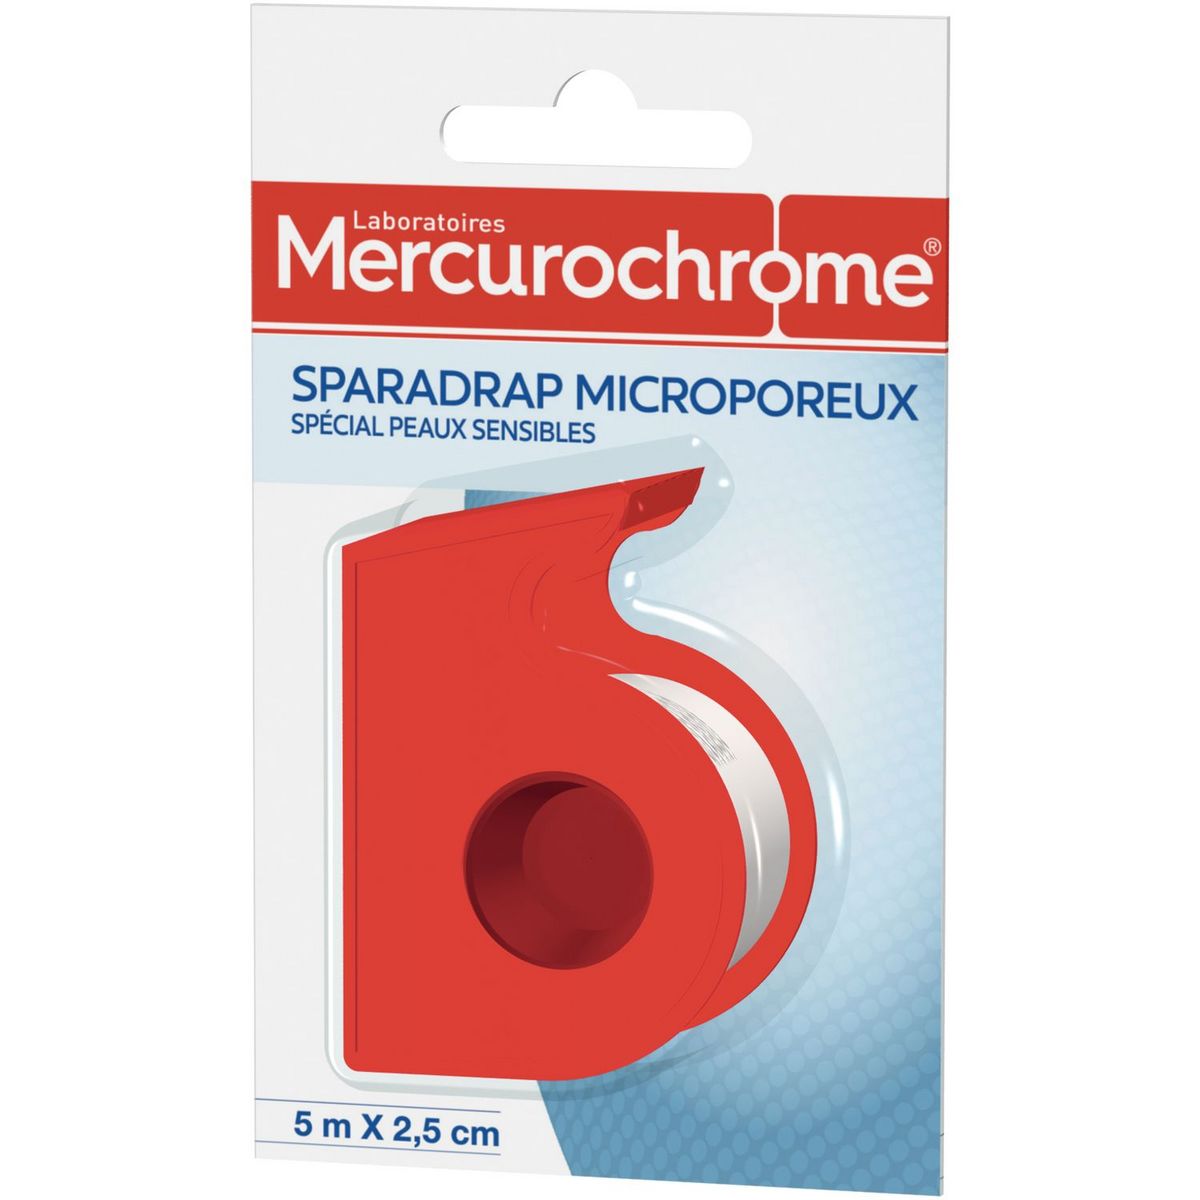 MERCUROCHROME Sparadrap microporeux peaux sensibles 5mx2,5cm 5mx2,5cm 1 rouleau